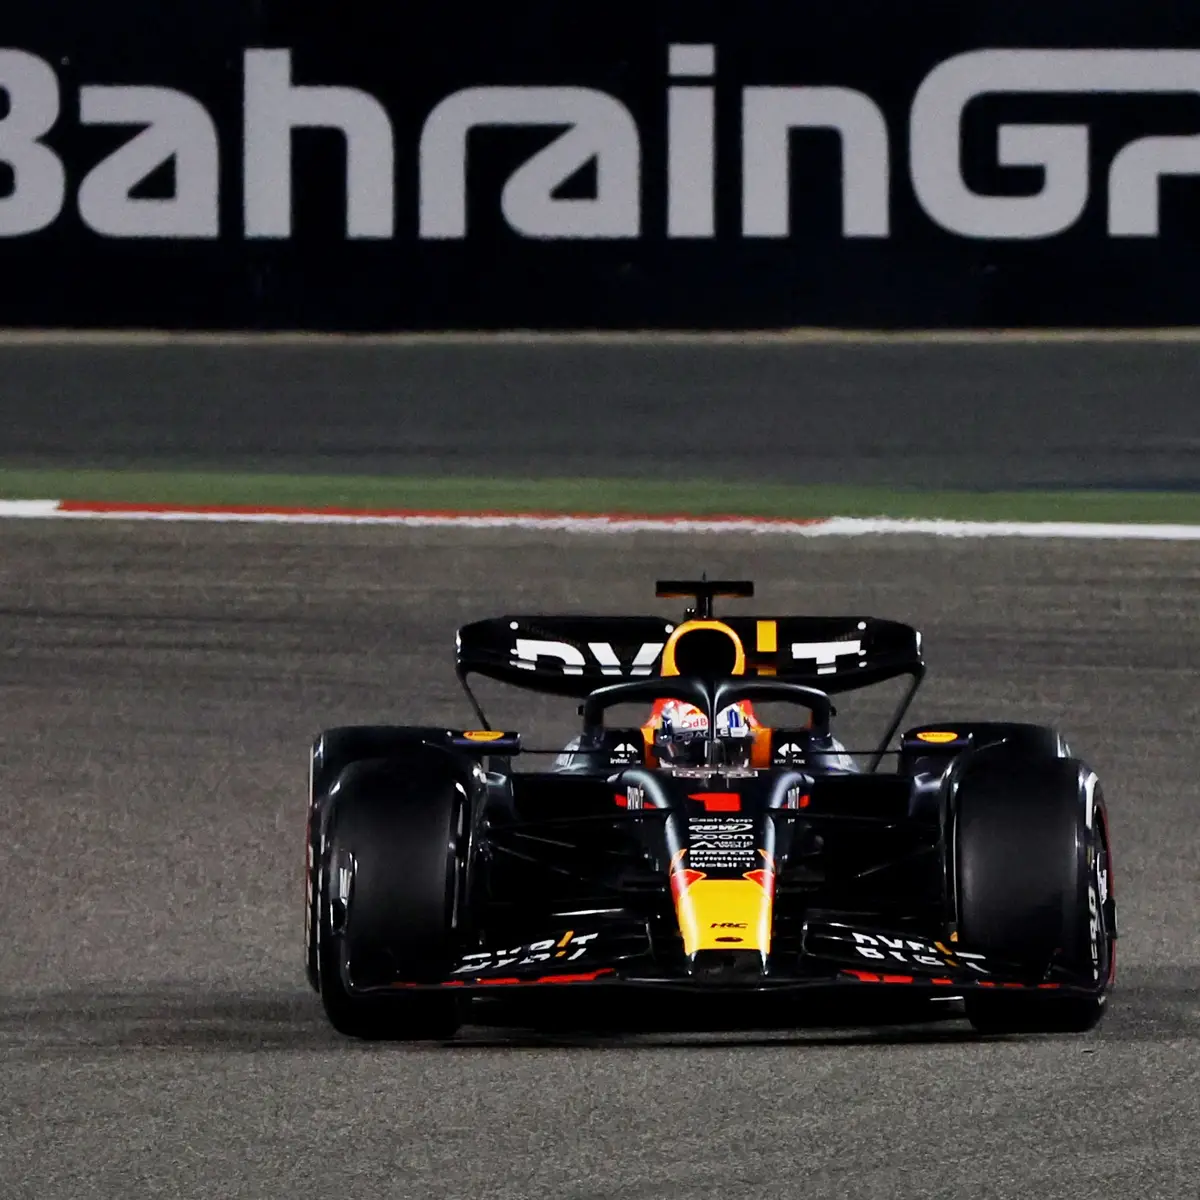 Arranca o Mundial de F1. Os horários para o Grande Prémio do Bahrain